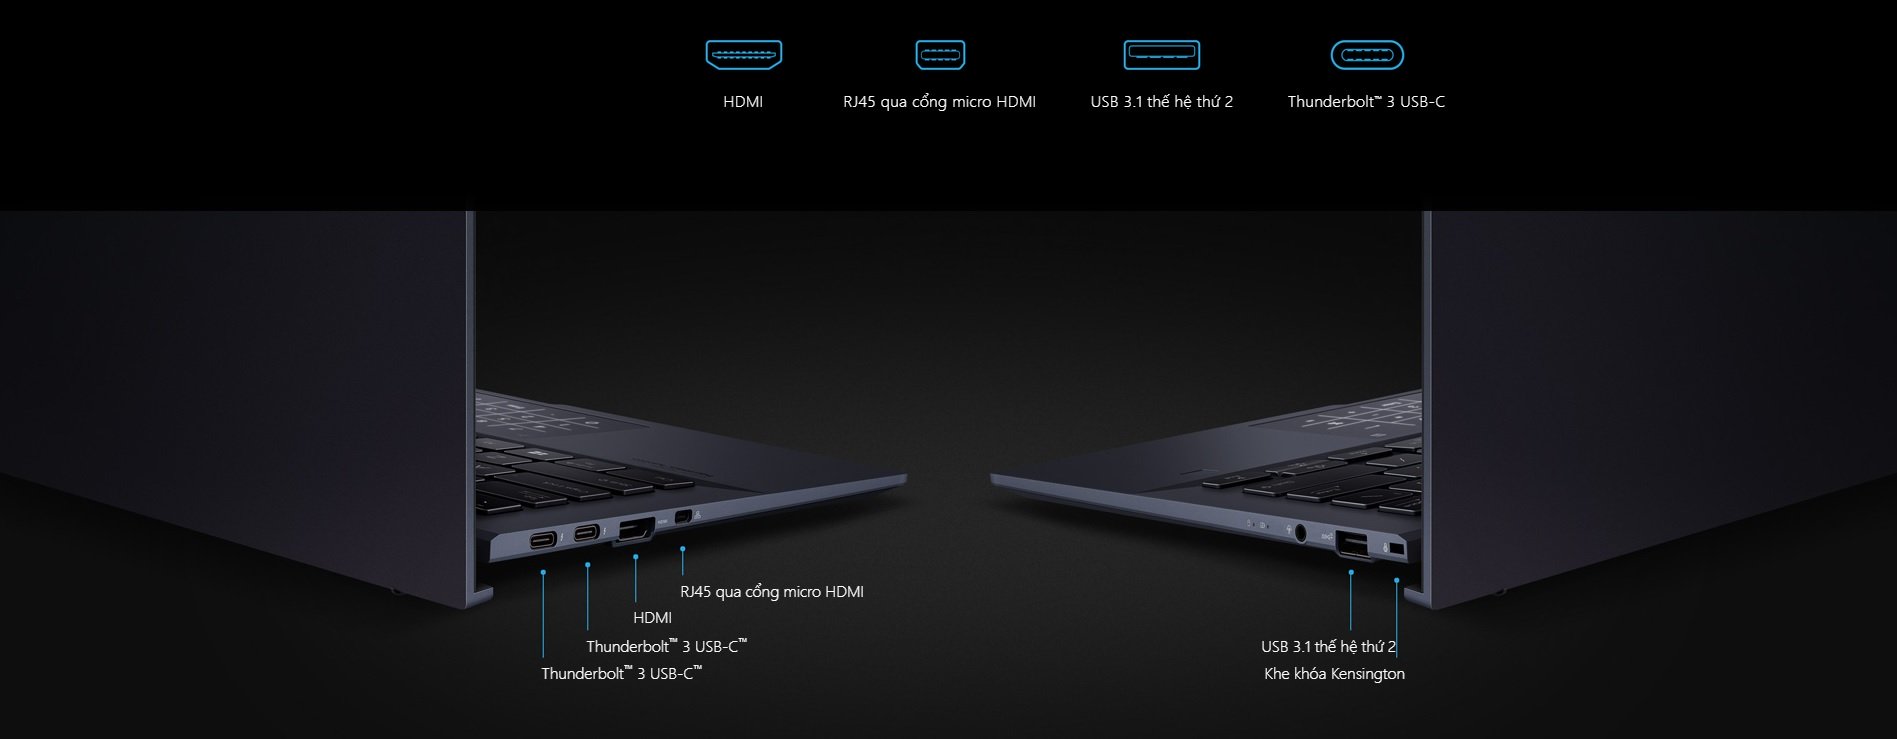 Máy tính xách tay – Laptop ASUS ExpertBook B9450FA-BM0324T R4